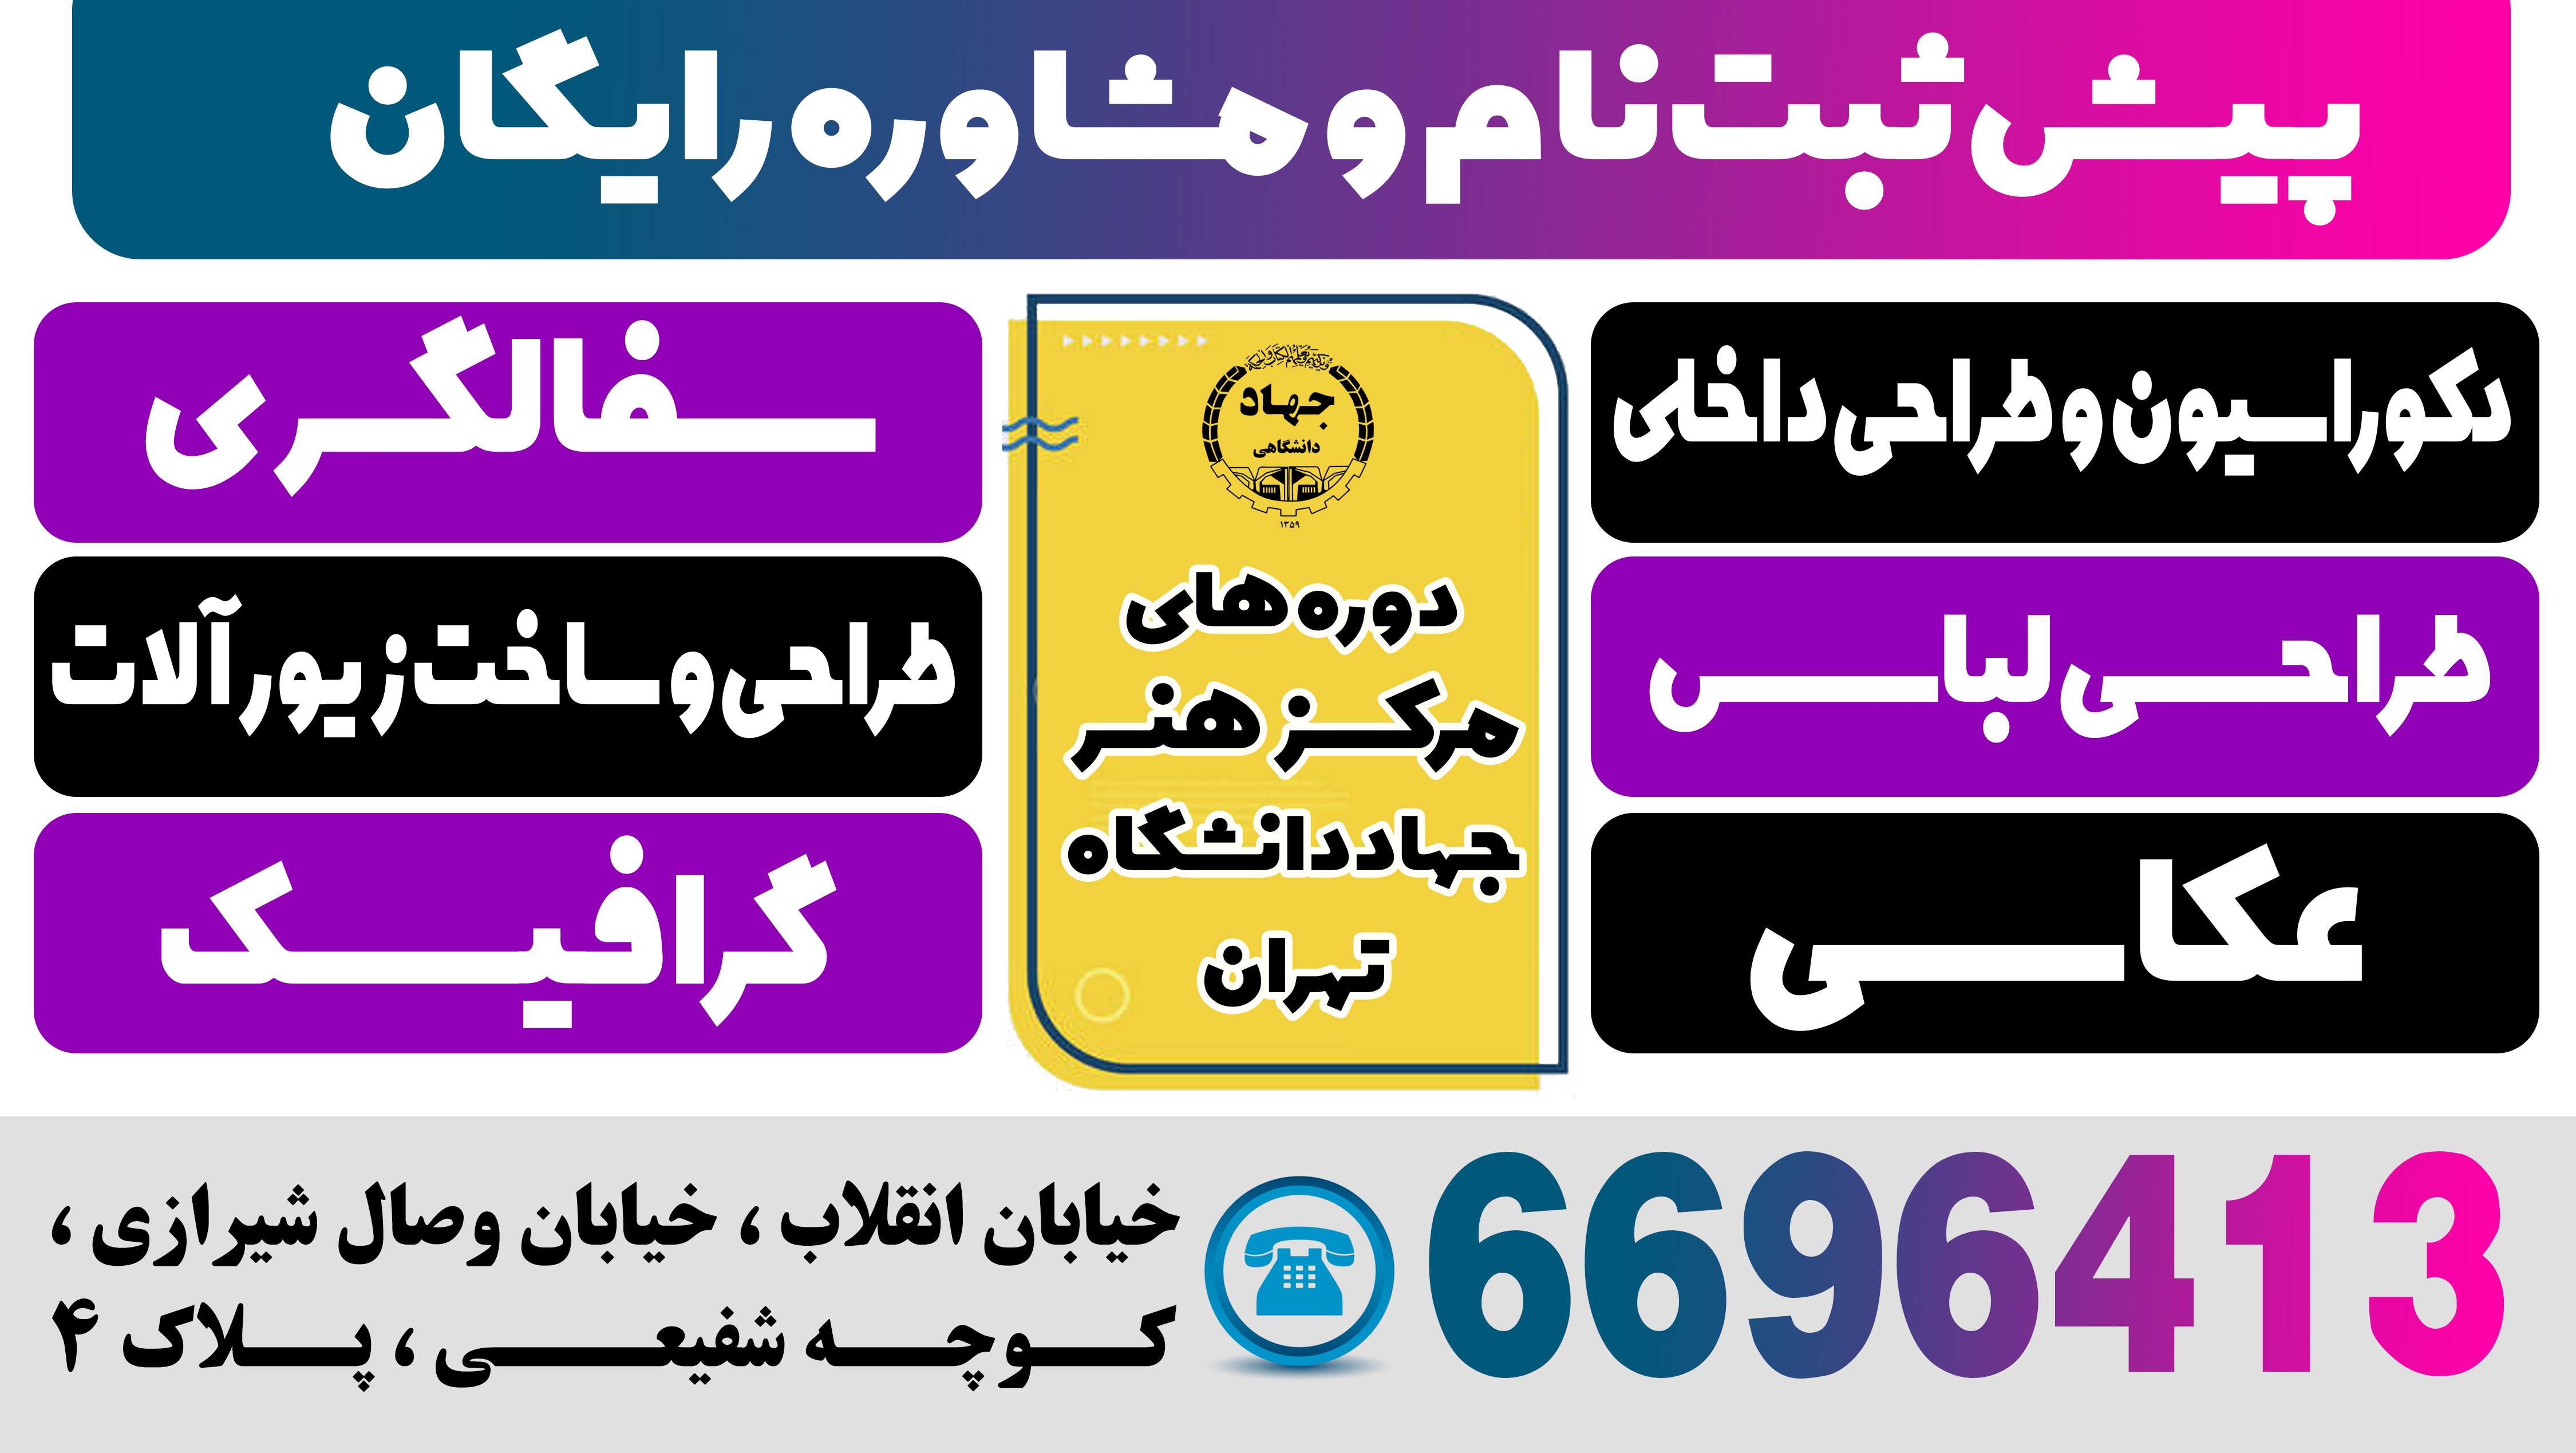 ثبت نام ترم بهار 1402 مرکز هنر سازمان جهاد دانشگاهی تهران آغاز شد.